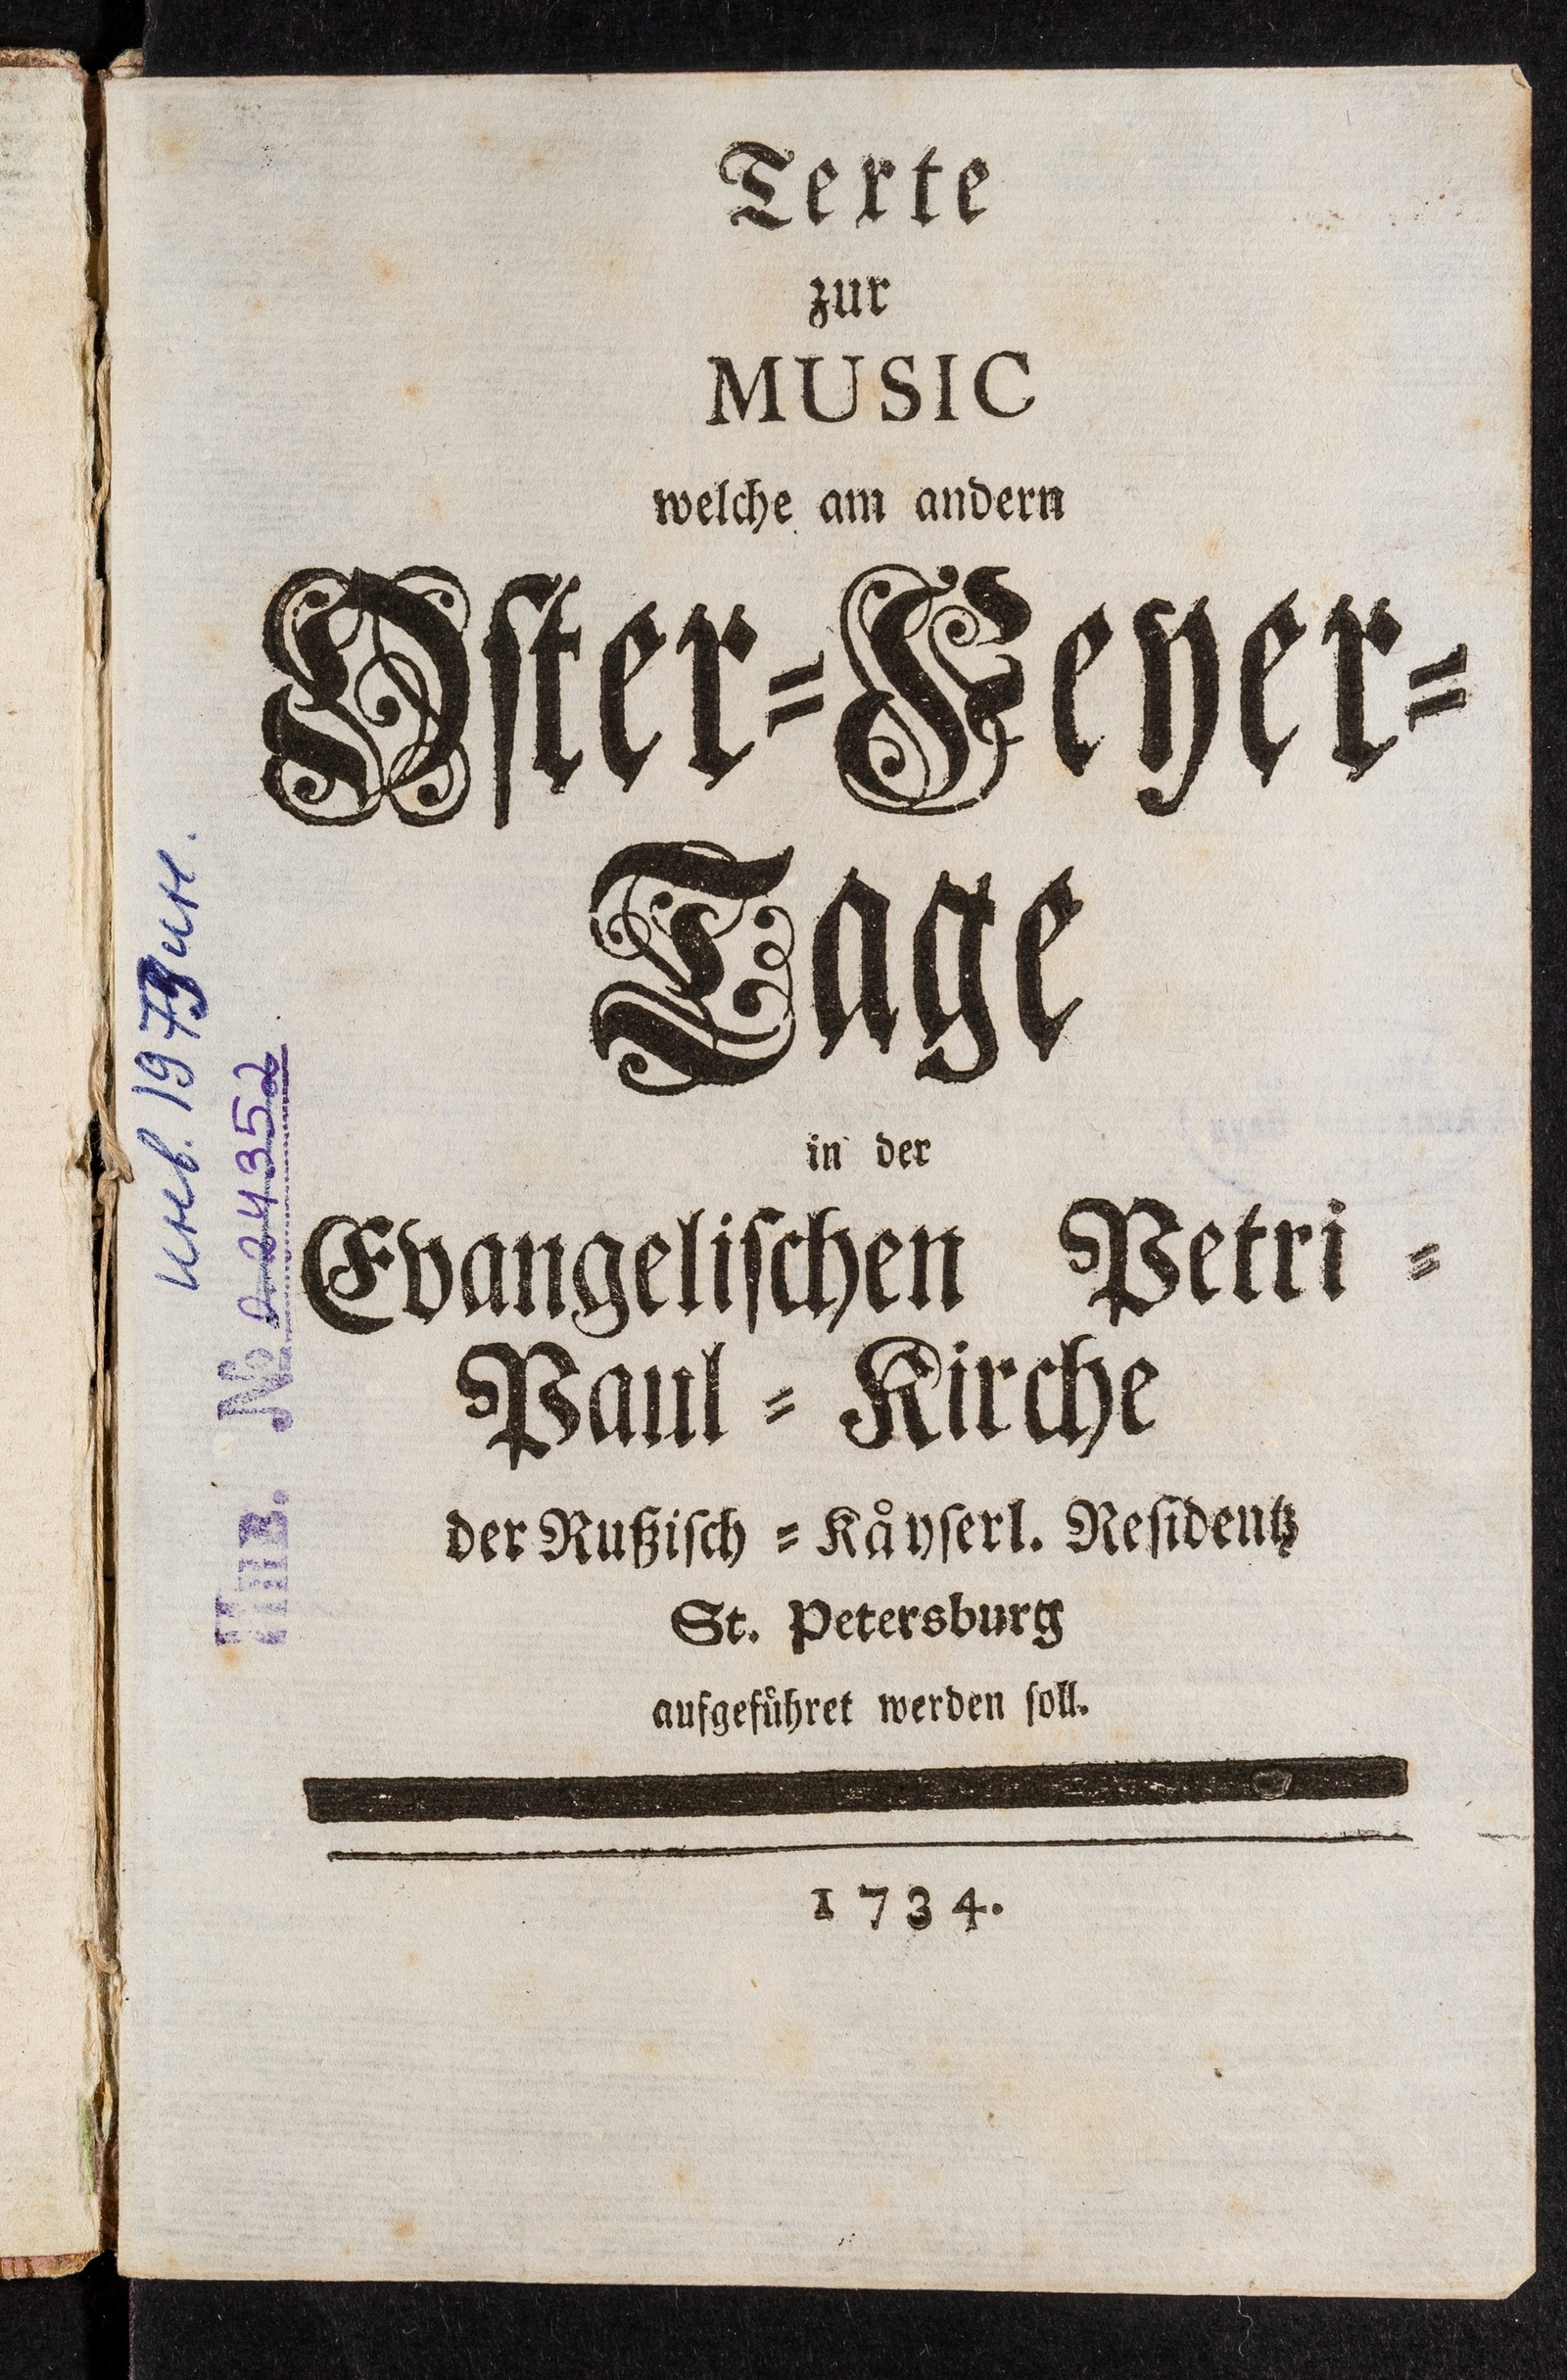 Изображение книги Texte zur Musik welche am andern Oster-Feyer-Tage in der Evangelischen Petri-Paul-Kirche der Rußisch-Käyserl